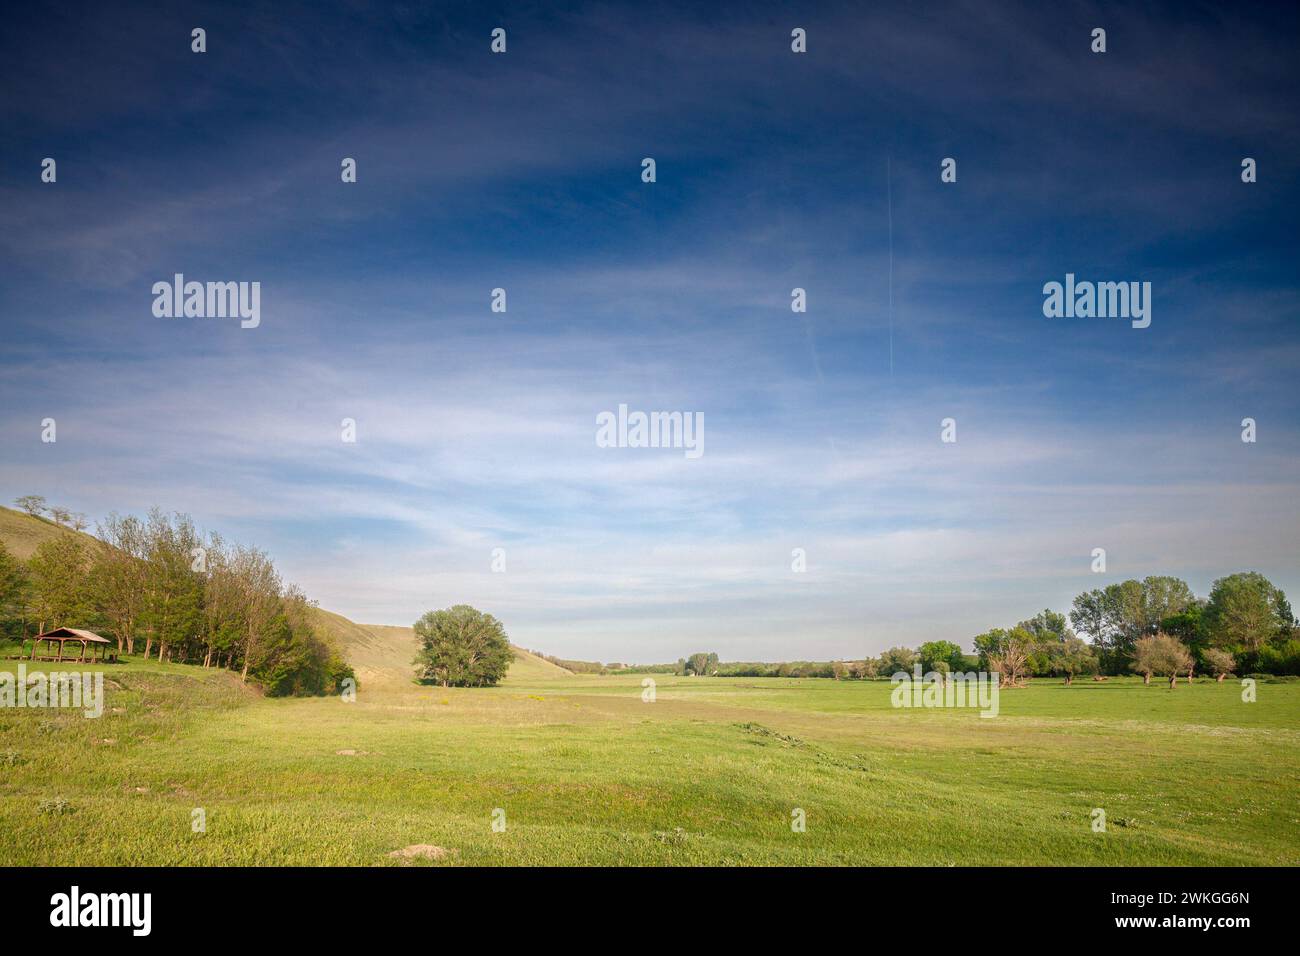 Immagine di un campo e di un cielo blu in estate, su bregg titelski, o collina titel. Titelski Breg o collina di Titel è un altopiano di loess situato nella Vojvodina Foto Stock